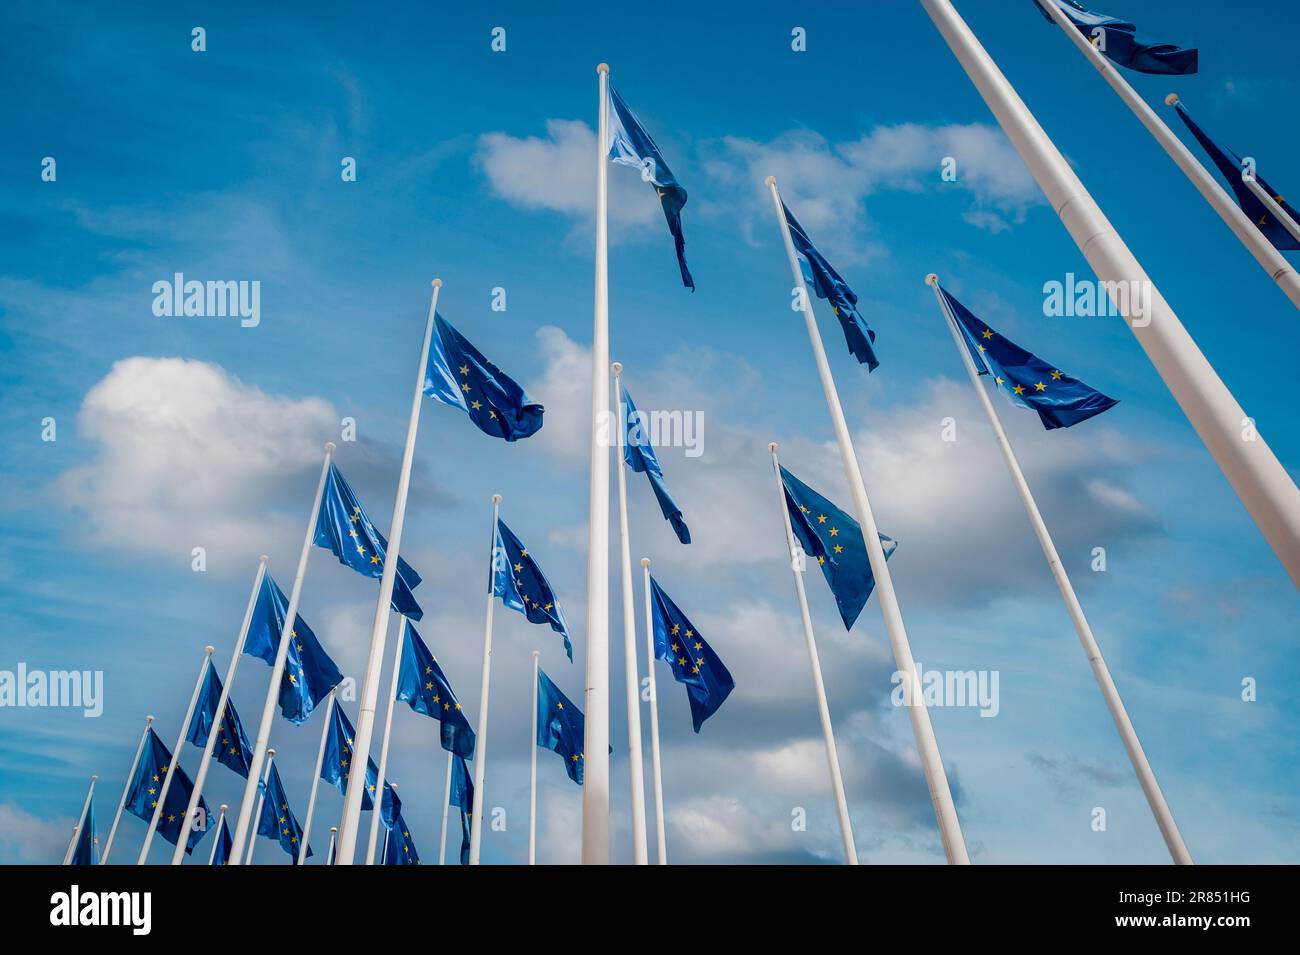 Drapeaux de l'Union européenne Banque D'Images